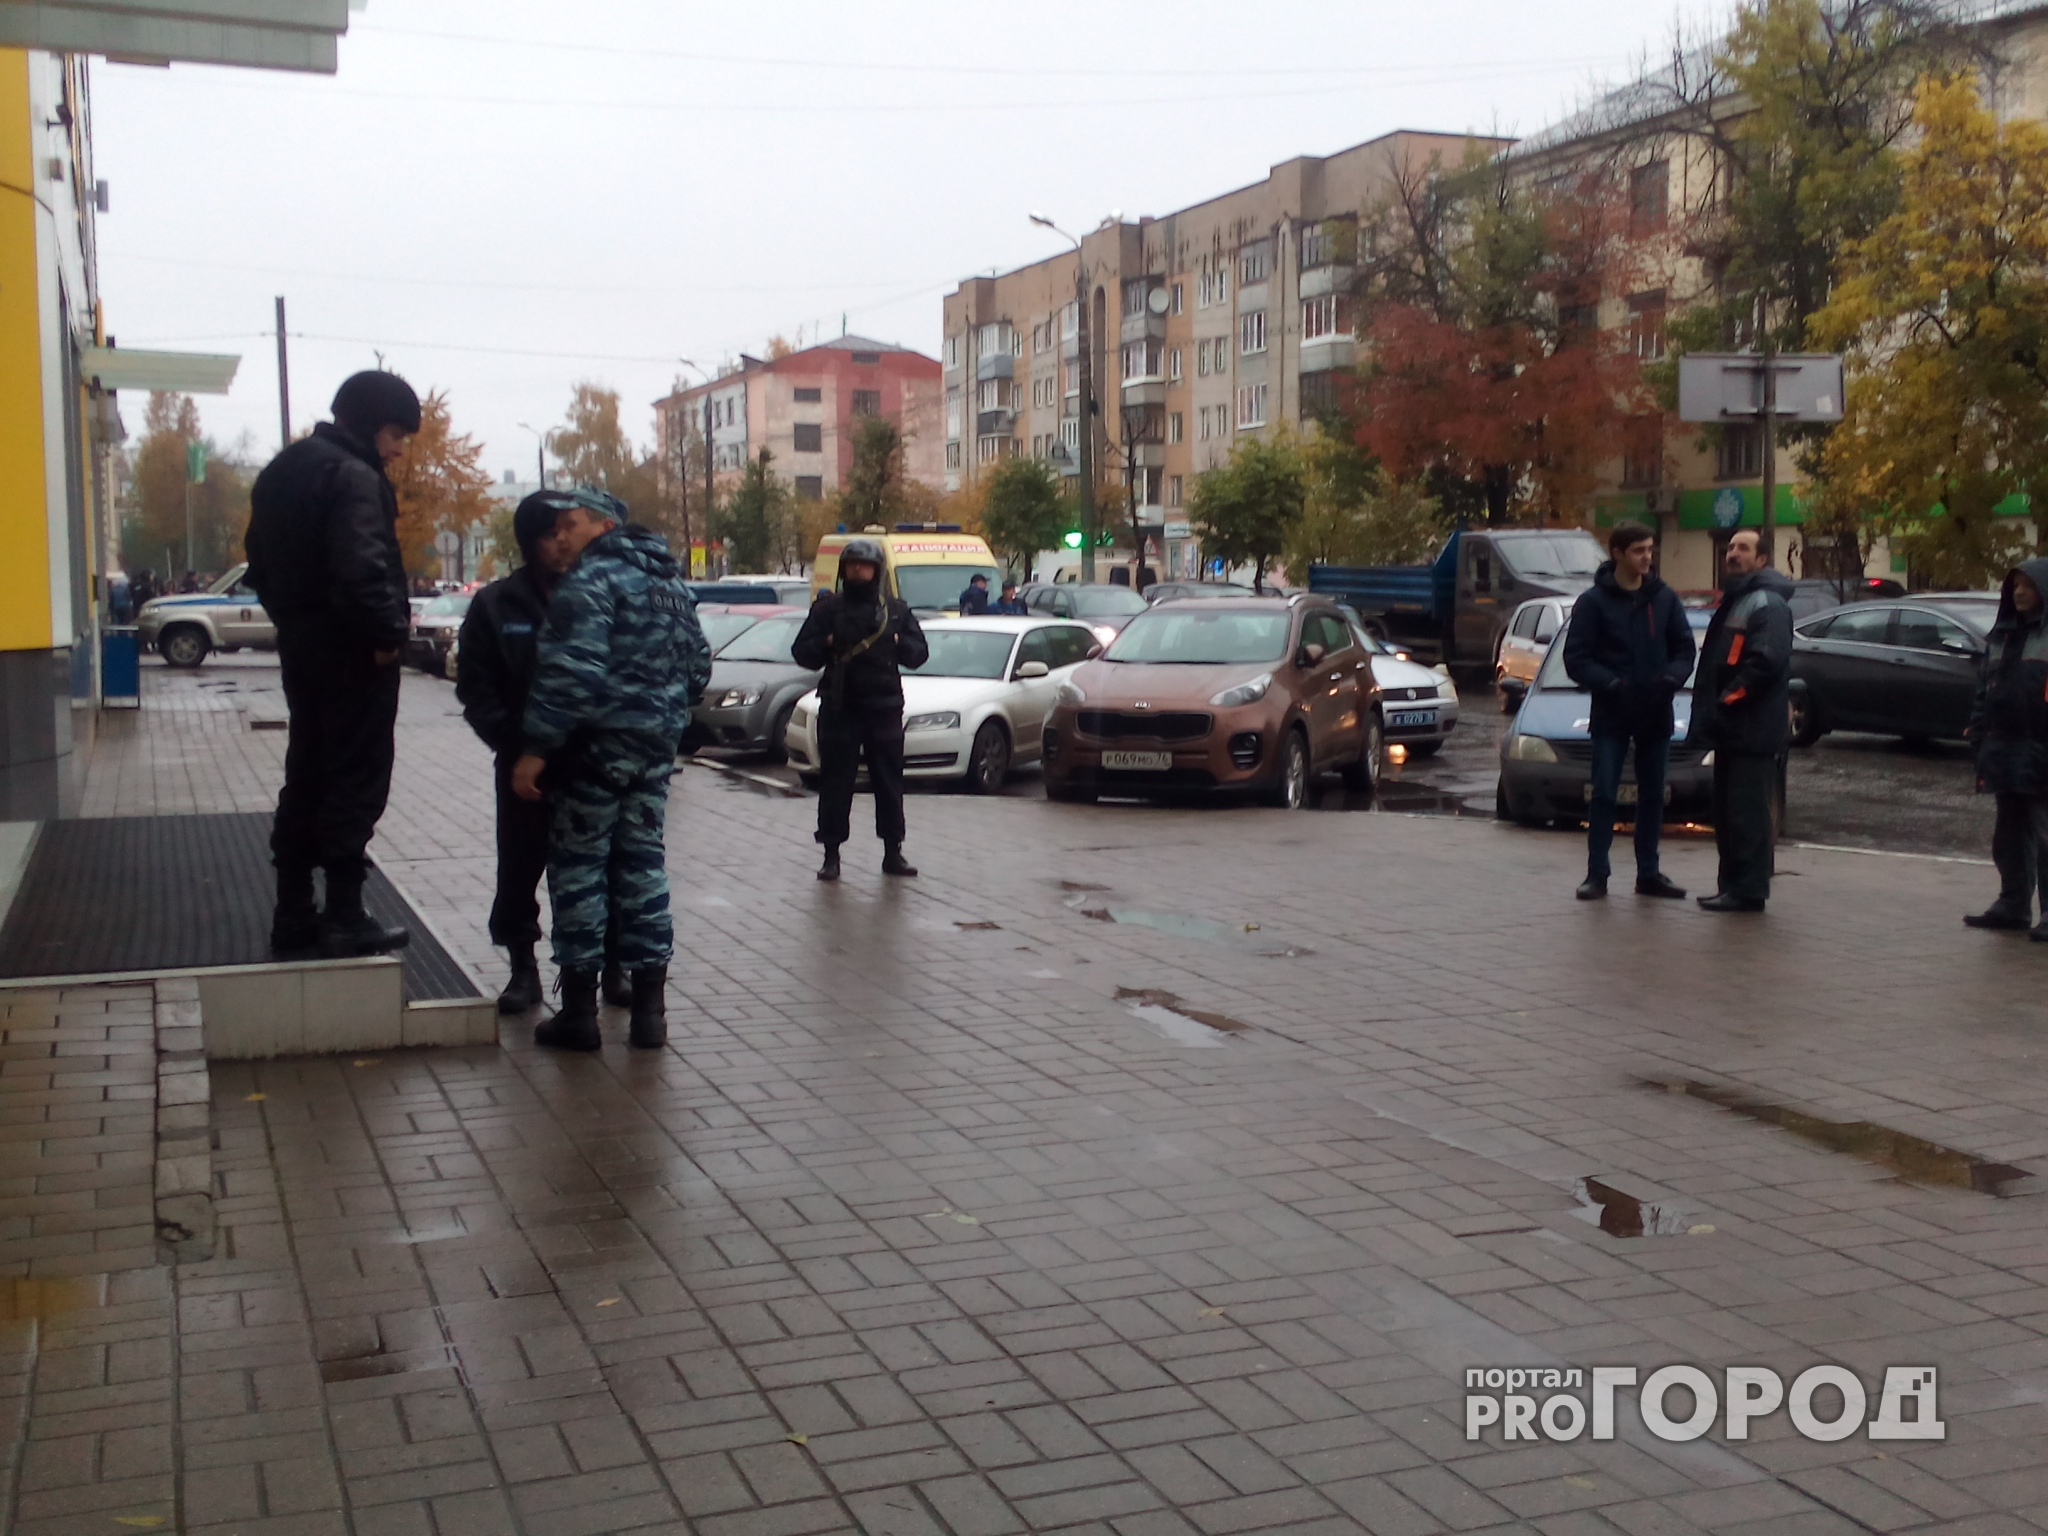 Житель Вязников сообщил о бомбе на рынке